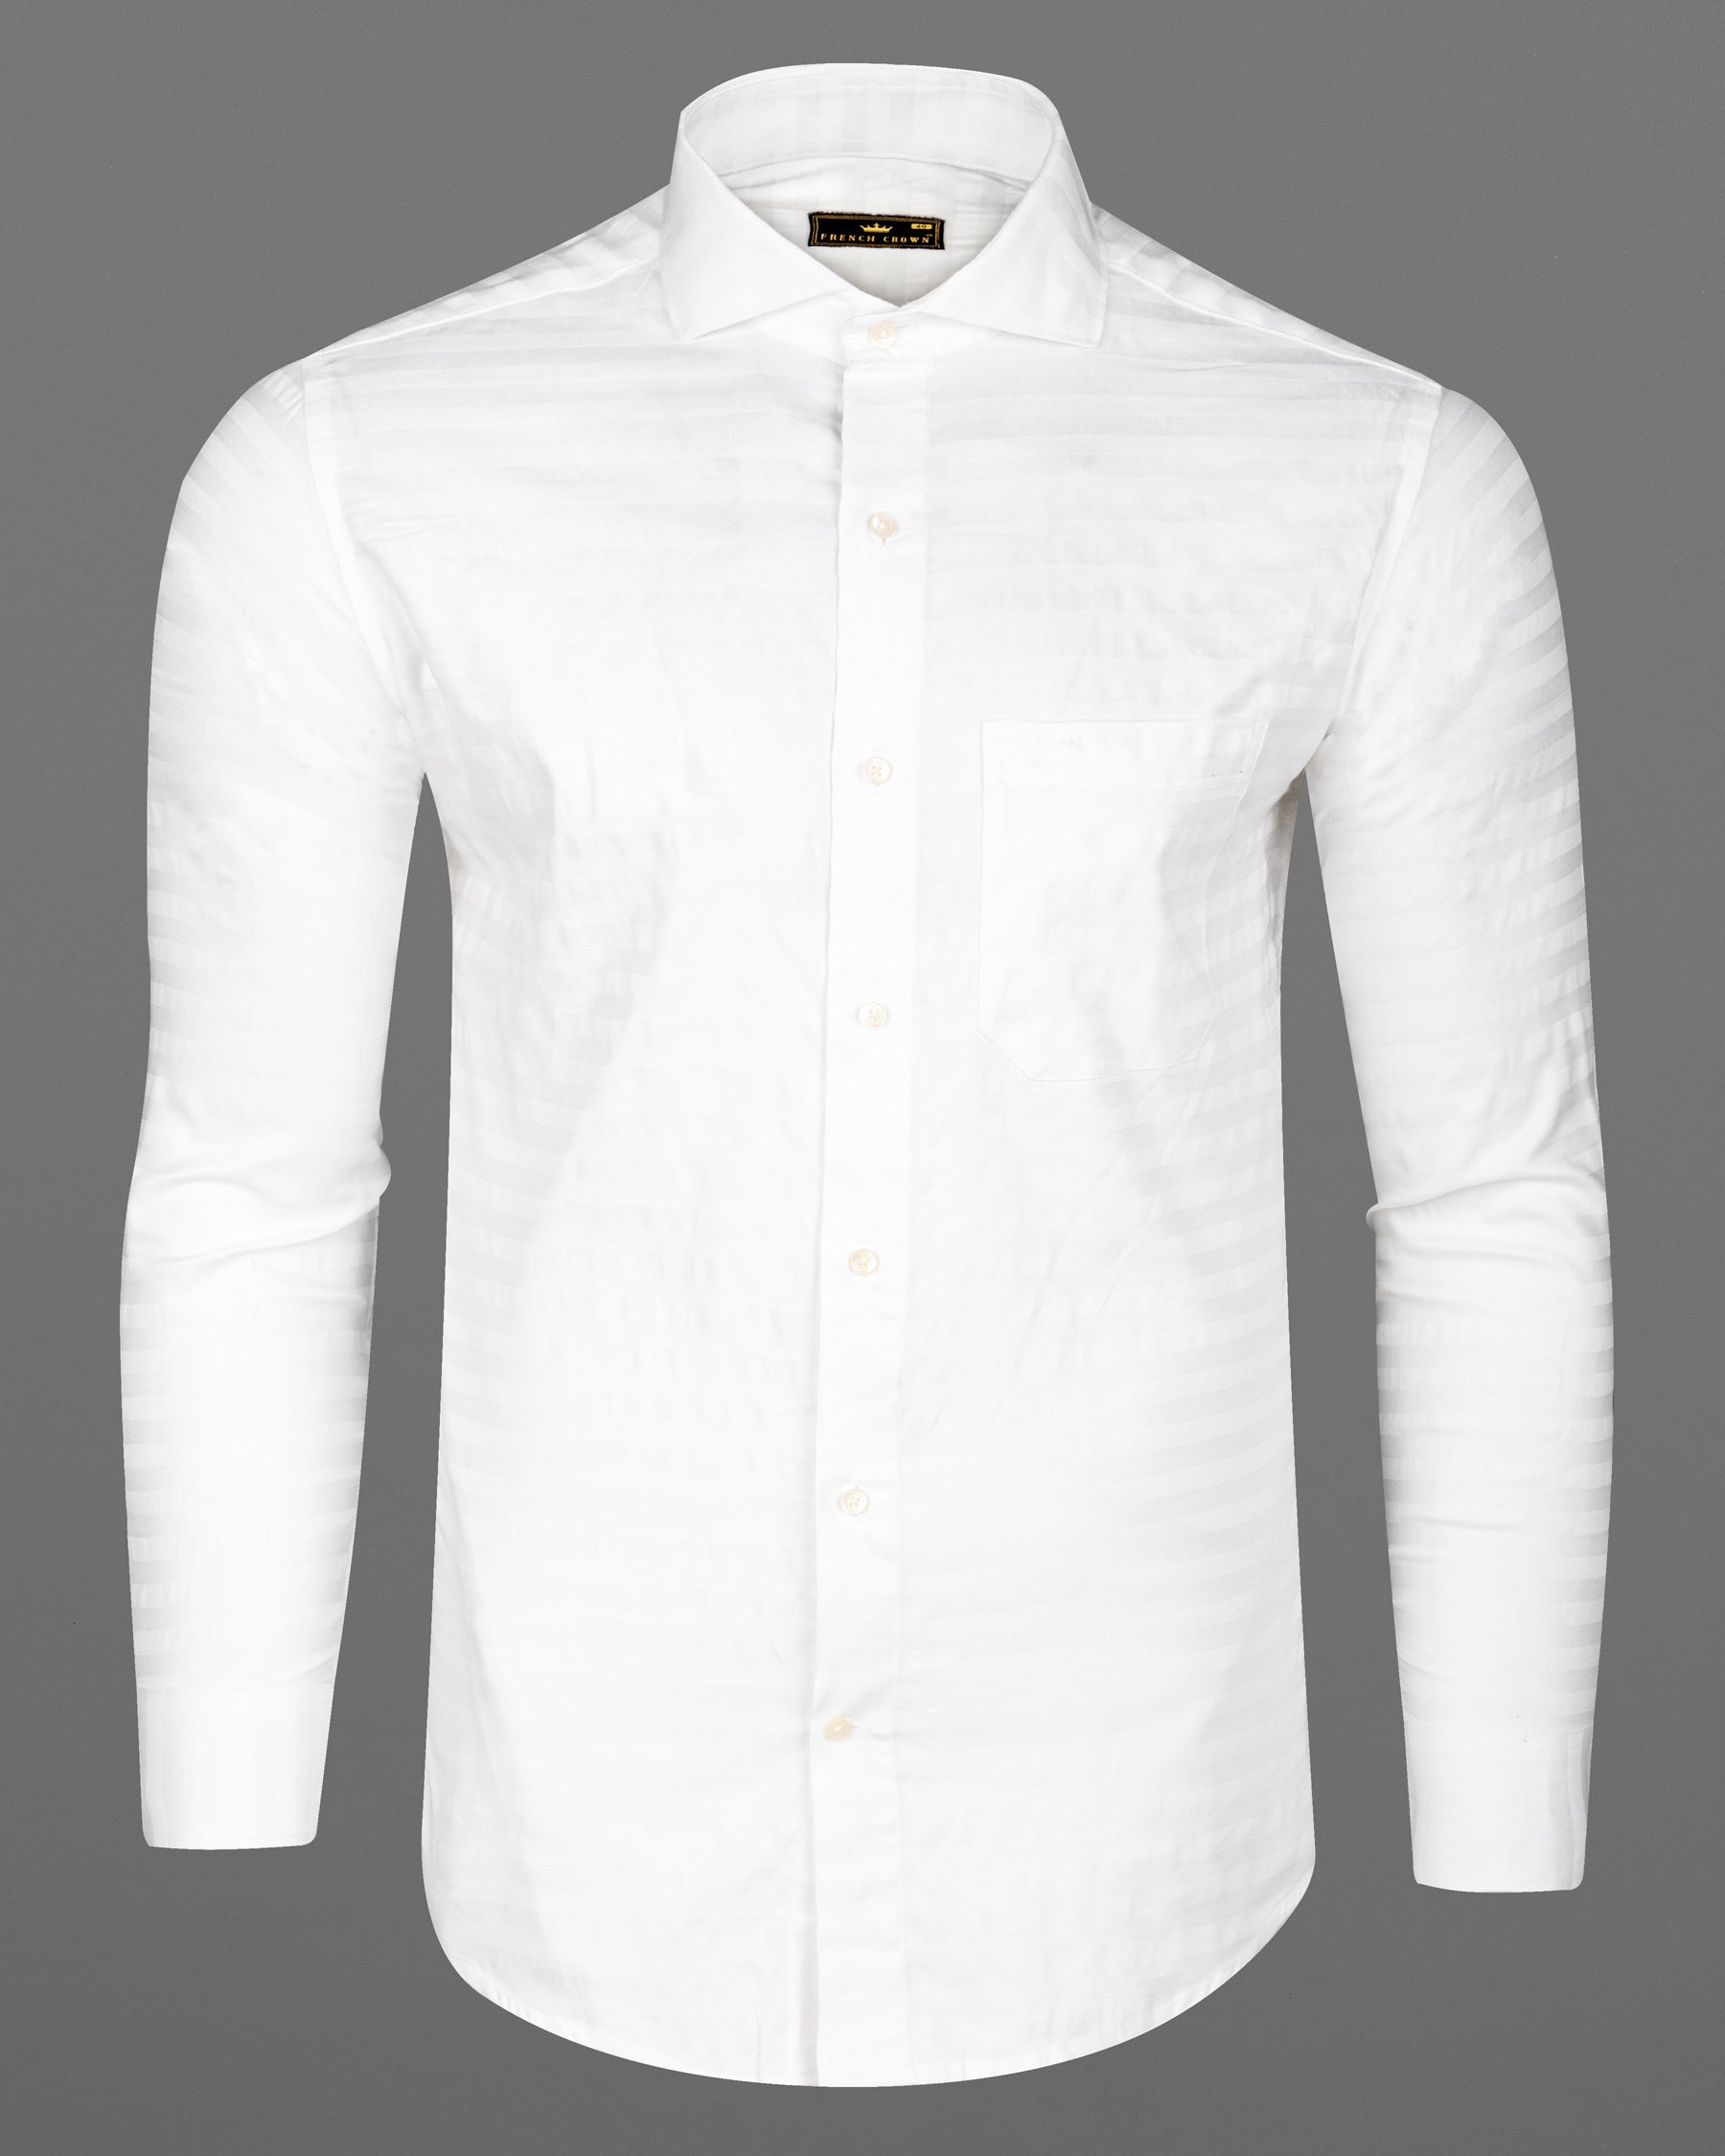 Bright White Subtle Striped Twill Premium Cotton Shirt 6747-CA-38,6747-CA-38,6747-CA-39,6747-CA-39,6747-CA-40,6747-CA-40,6747-CA-42,6747-CA-42,6747-CA-44,6747-CA-44,6747-CA-46,6747-CA-46,6747-CA-48,6747-CA-48,6747-CA-50,6747-CA-50,6747-CA-52,6747-CA-52